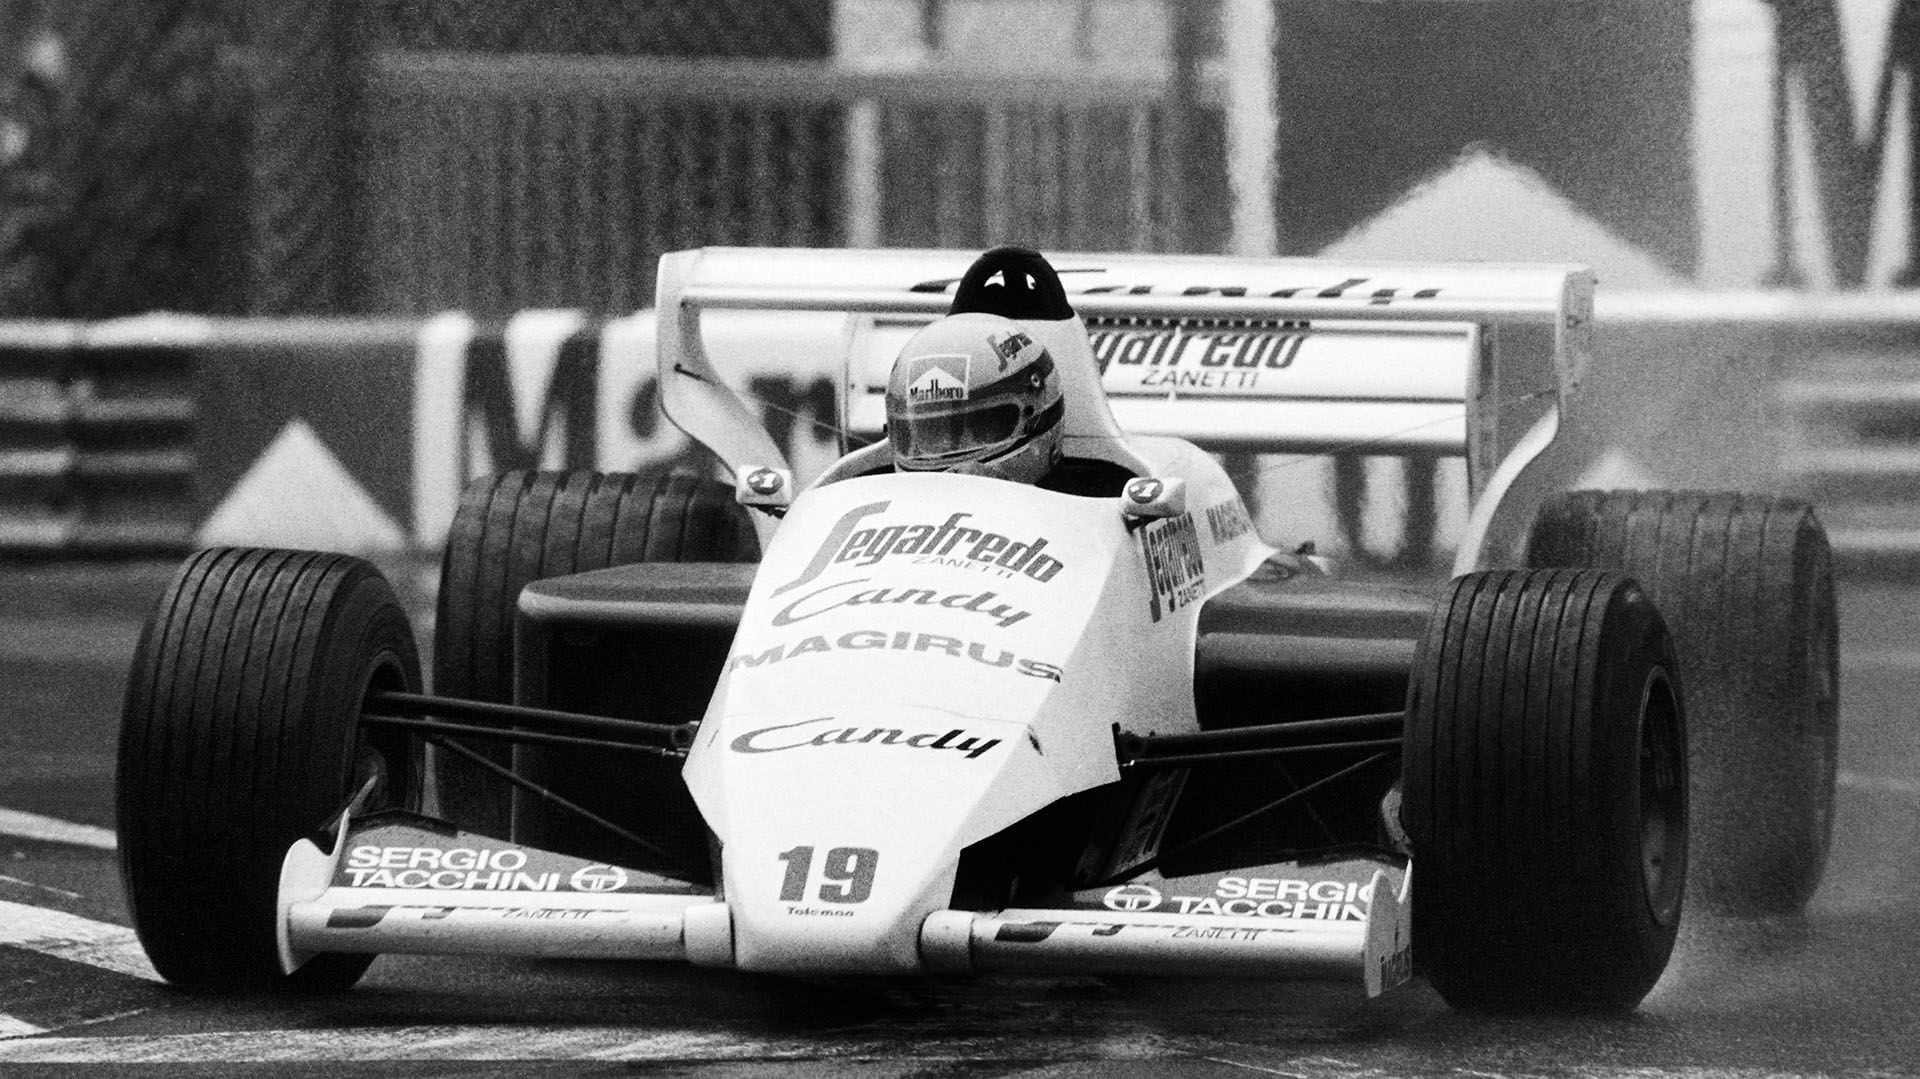 El Toleman TG184 con el que Ayrton Senna brilló bajo una lluvia torrencial en Mónaco 1984, en su primer año en la F1 (Photo by Eric Gaillard and Gabriel DUVAL / AFP)